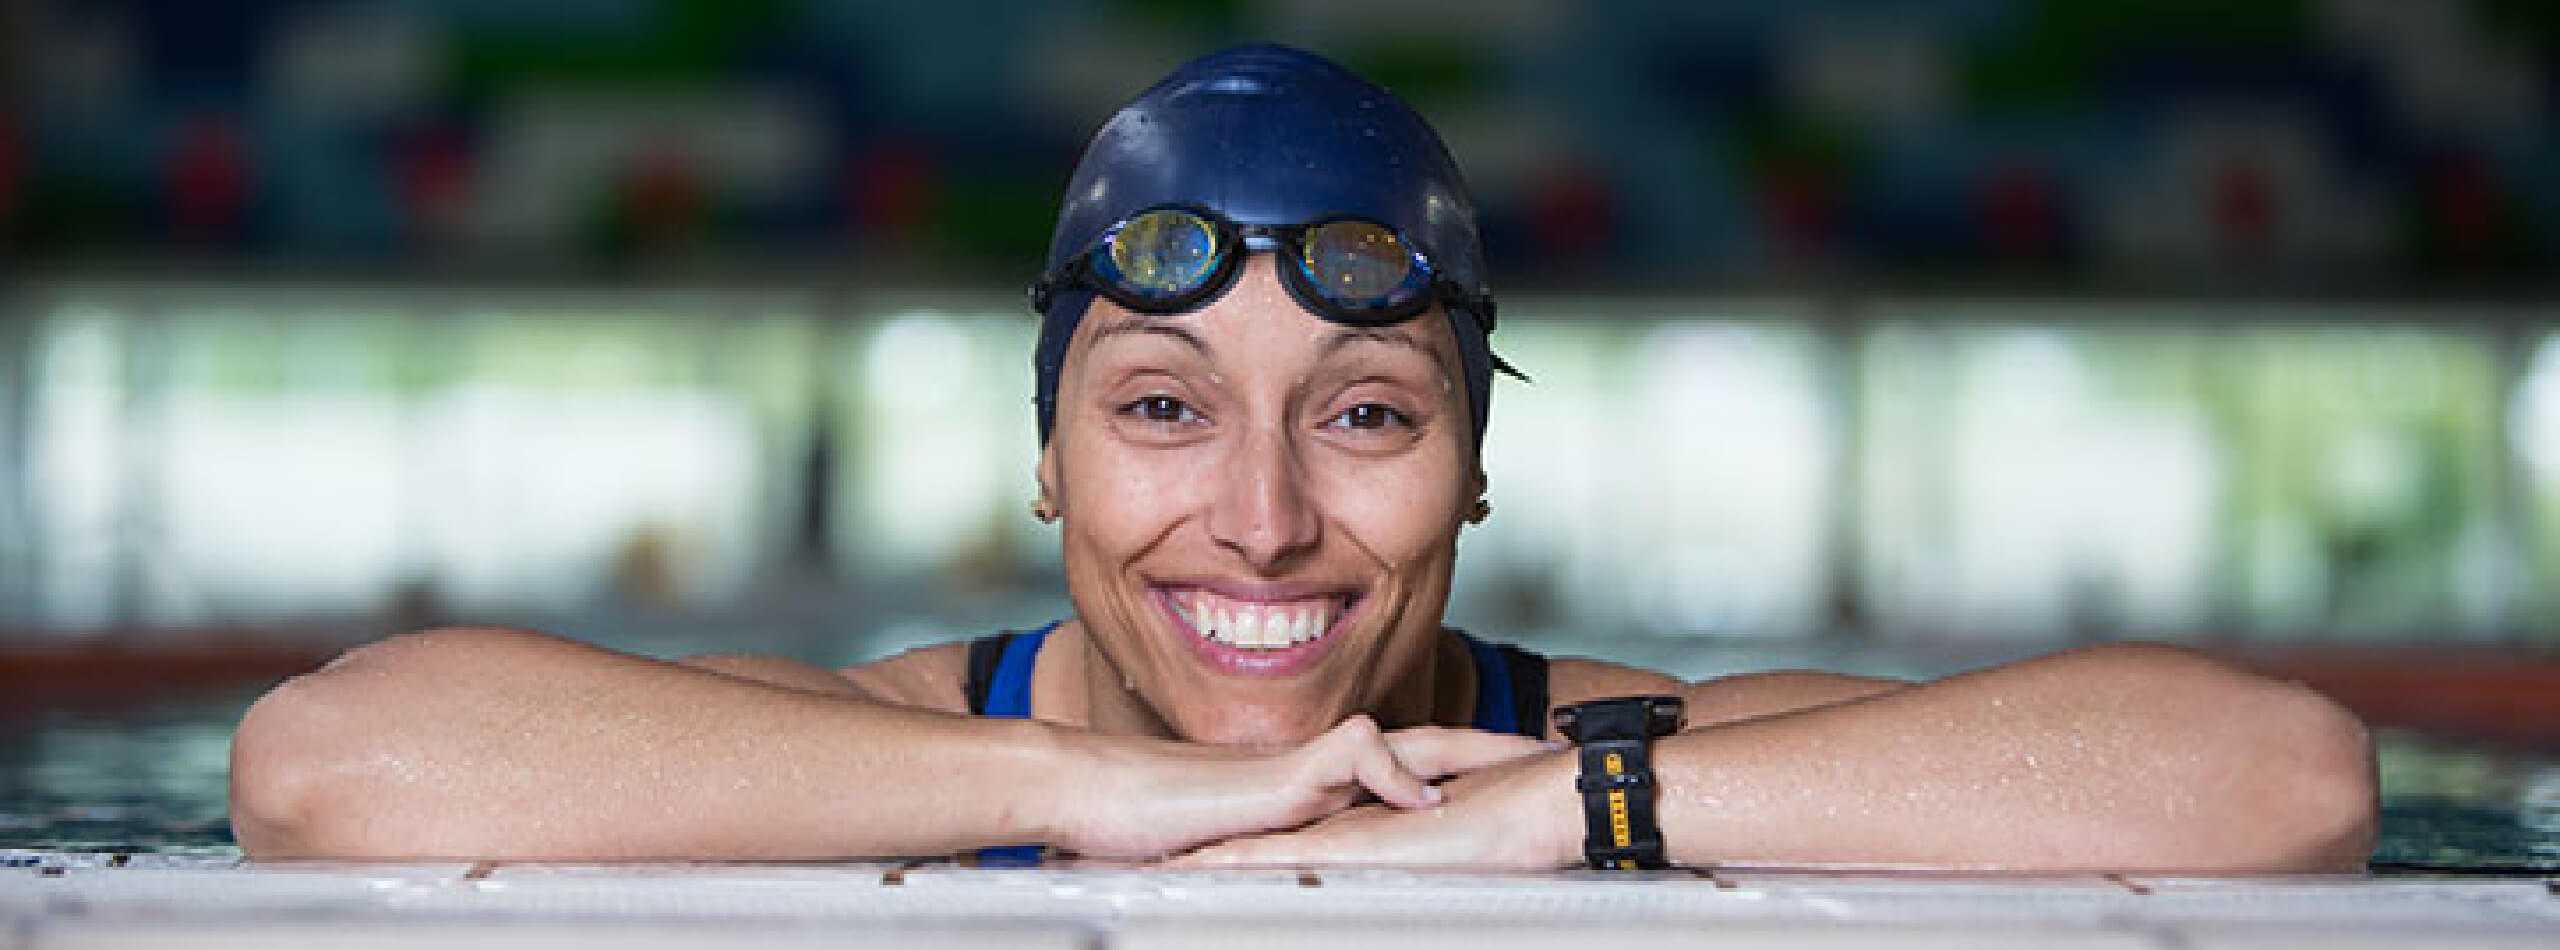 Teresa Perales es una de las deportistas paralímpicas más representativas de España / Fundación Telefónica